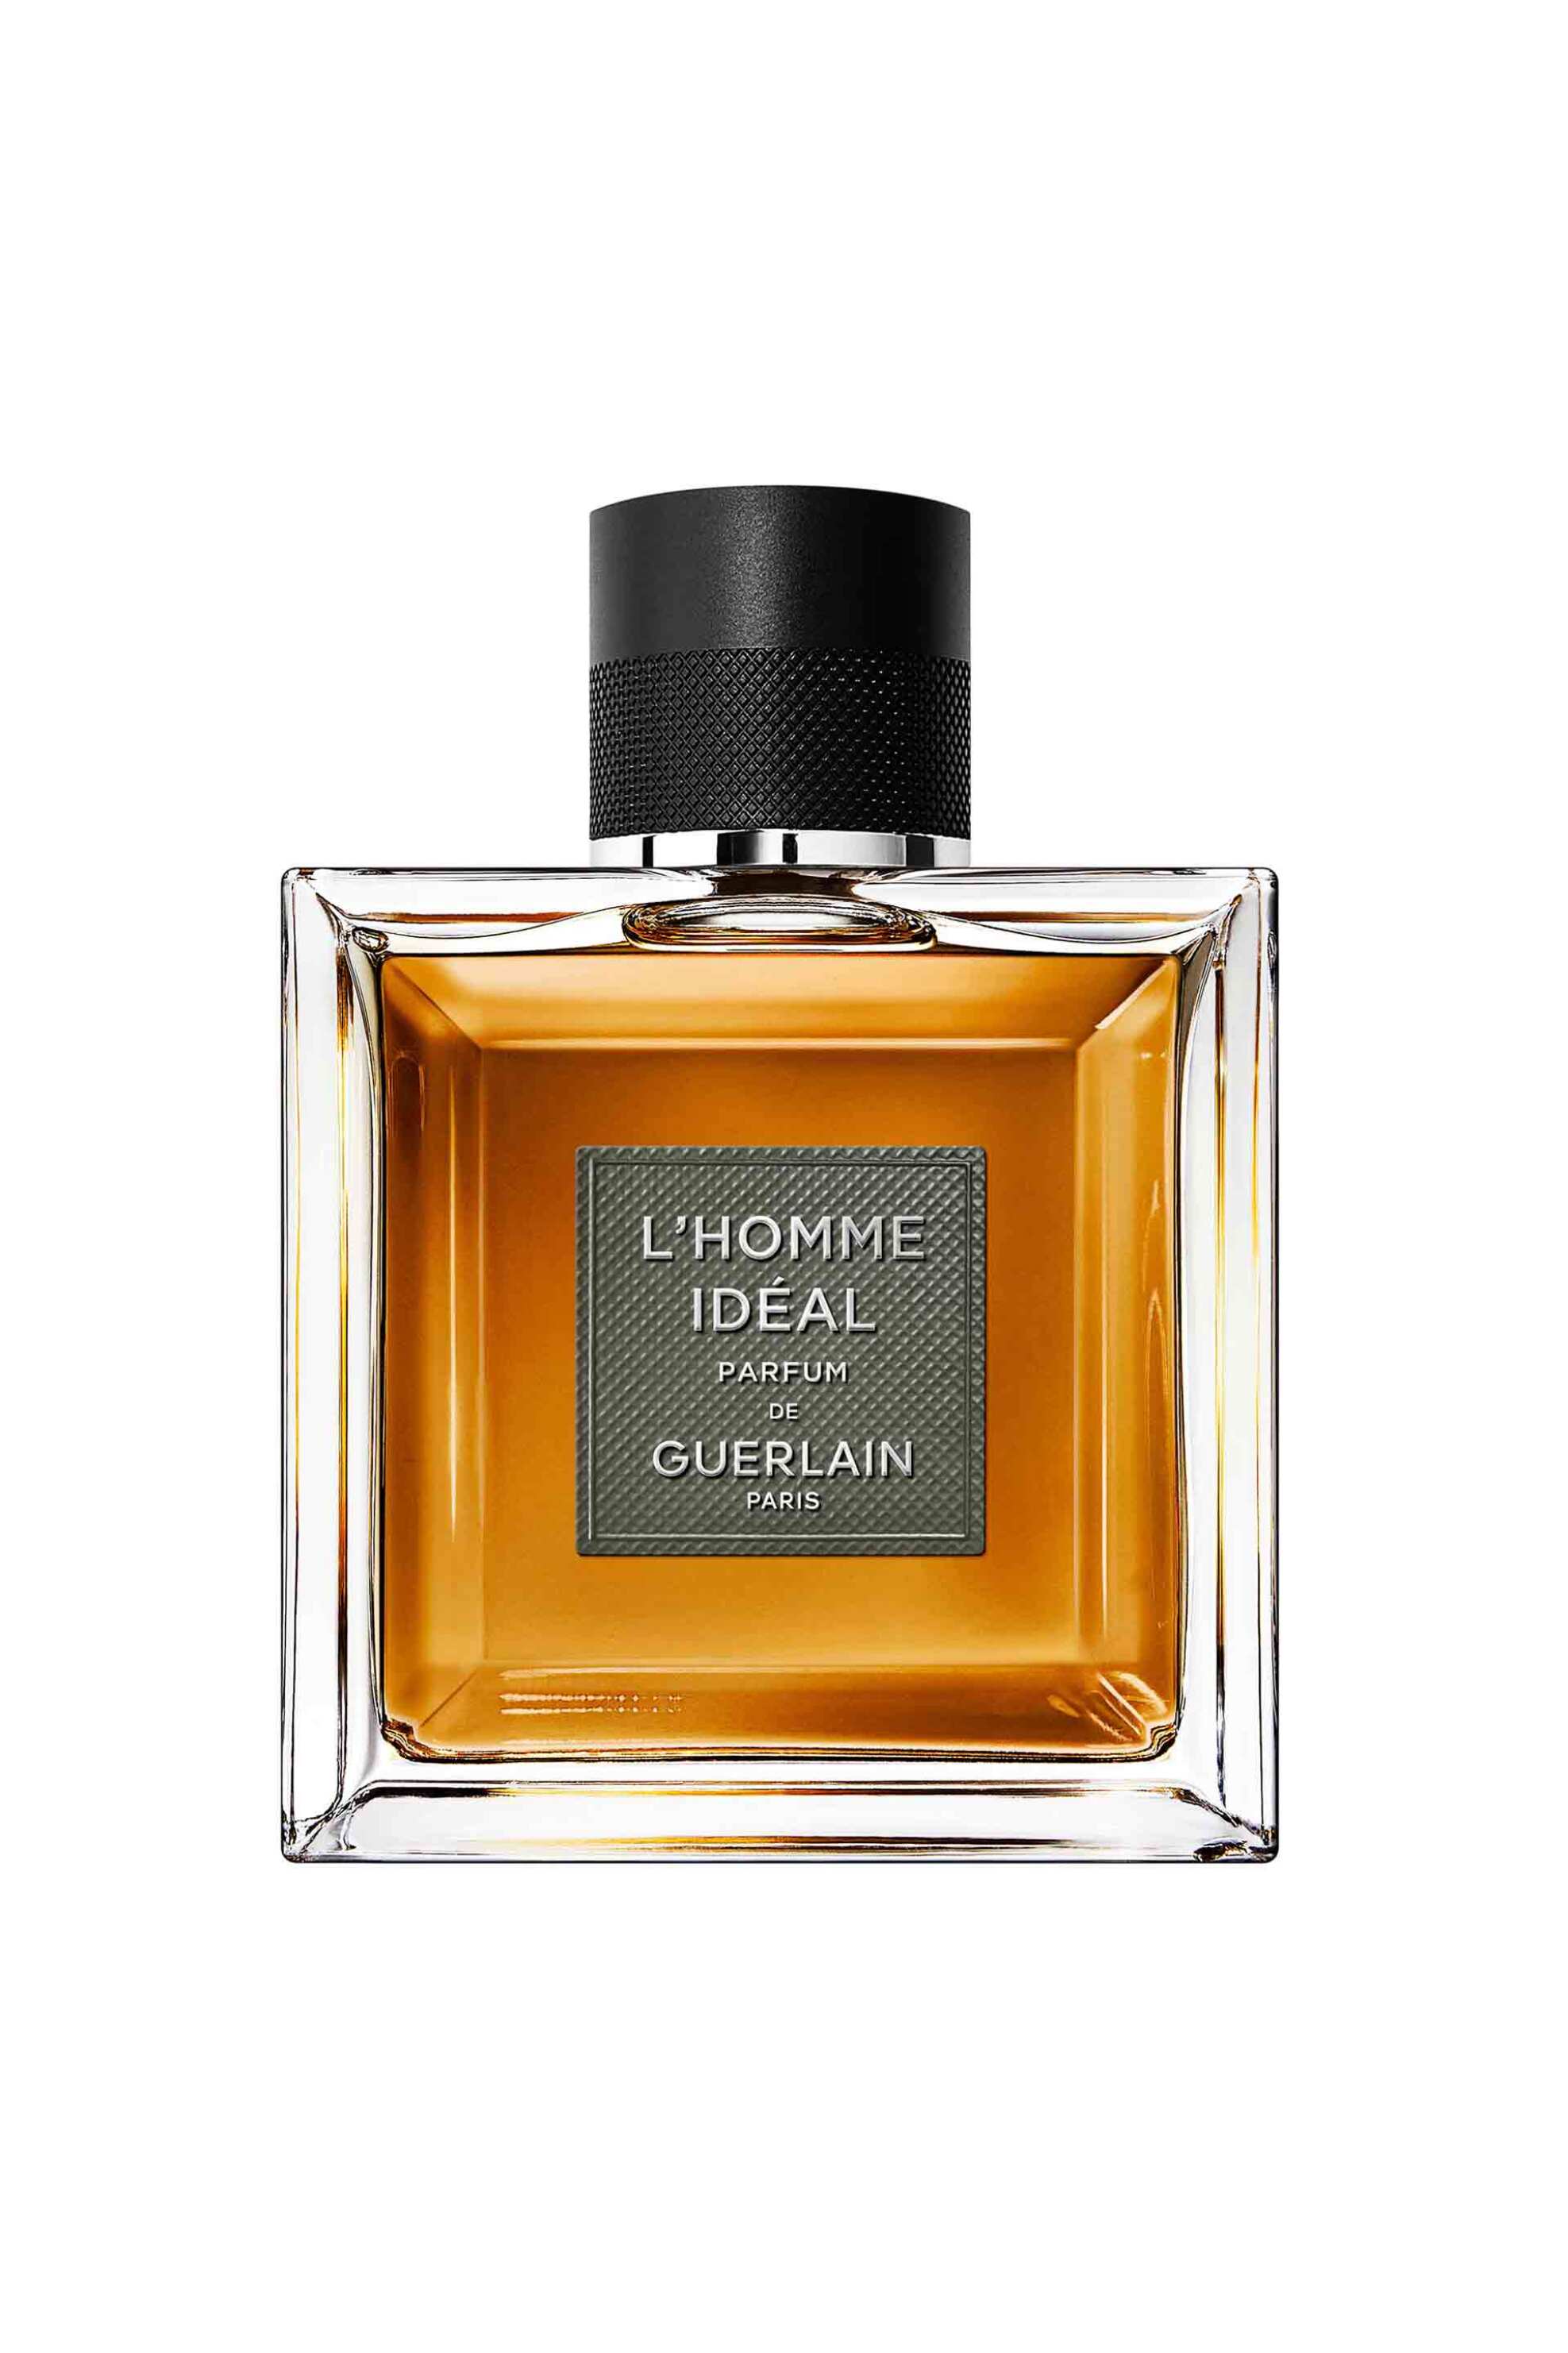 Προϊόντα Ομορφιάς > ΑΡΩΜΑΤΑ > Ανδρικά Αρώματα > Eau de Parfum - Parfum Guerlain L'Homme Idéal Le Parfum Eau de Parfum 100 ml - G030522